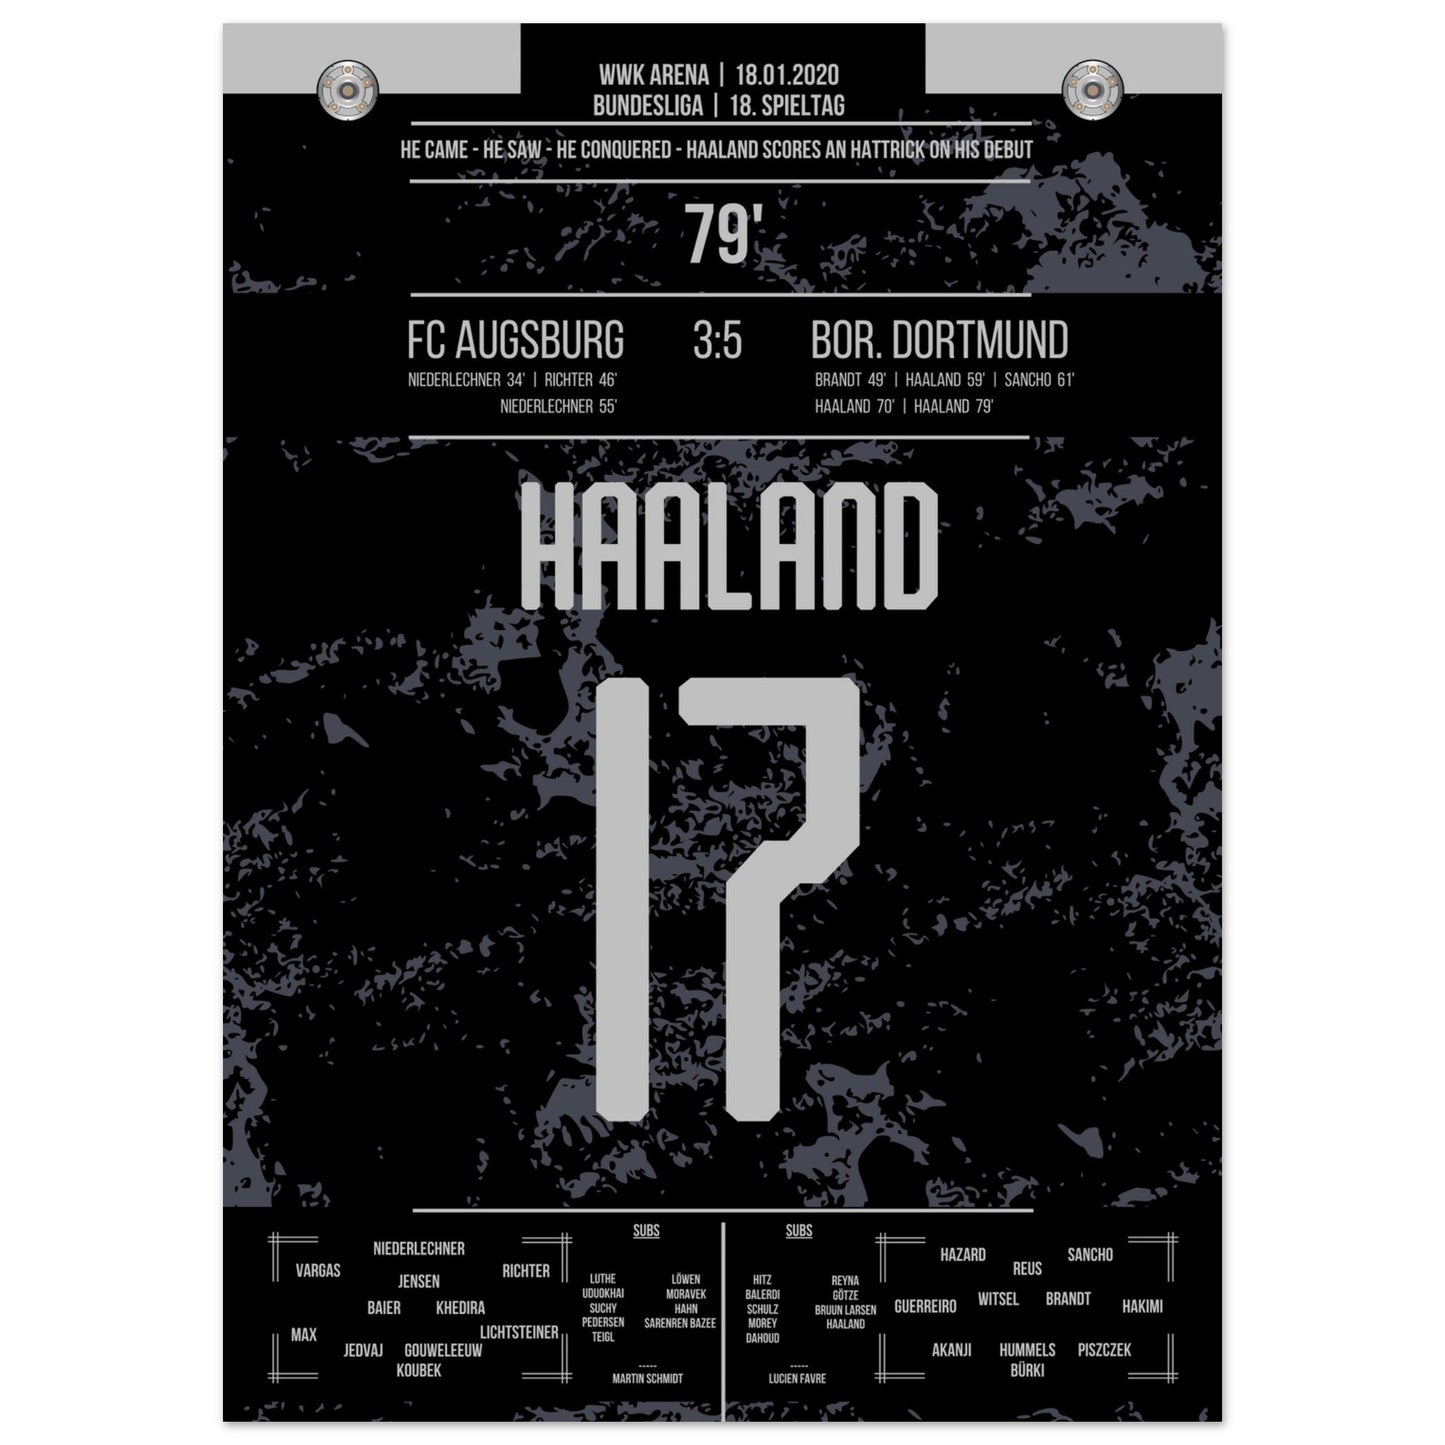 Haaland-Hattrick beim Bundesliga-Debüt in 2020